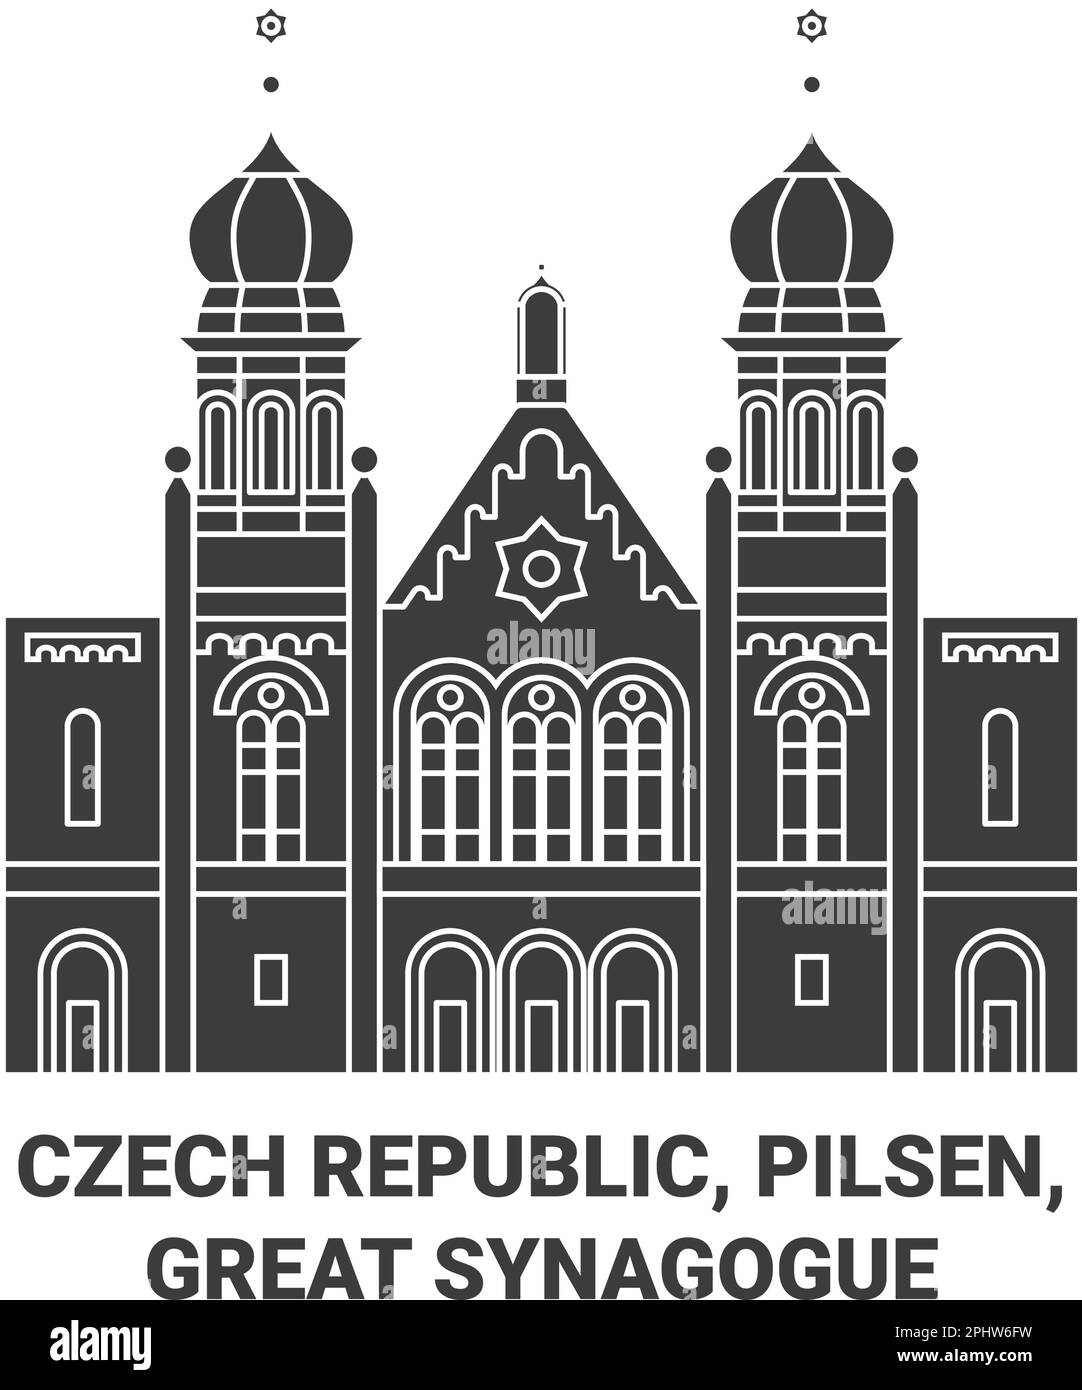 Tschechische Republik, Pilsen, große Synagoge Reise Wahrzeichen Vektordarstellung Stock Vektor